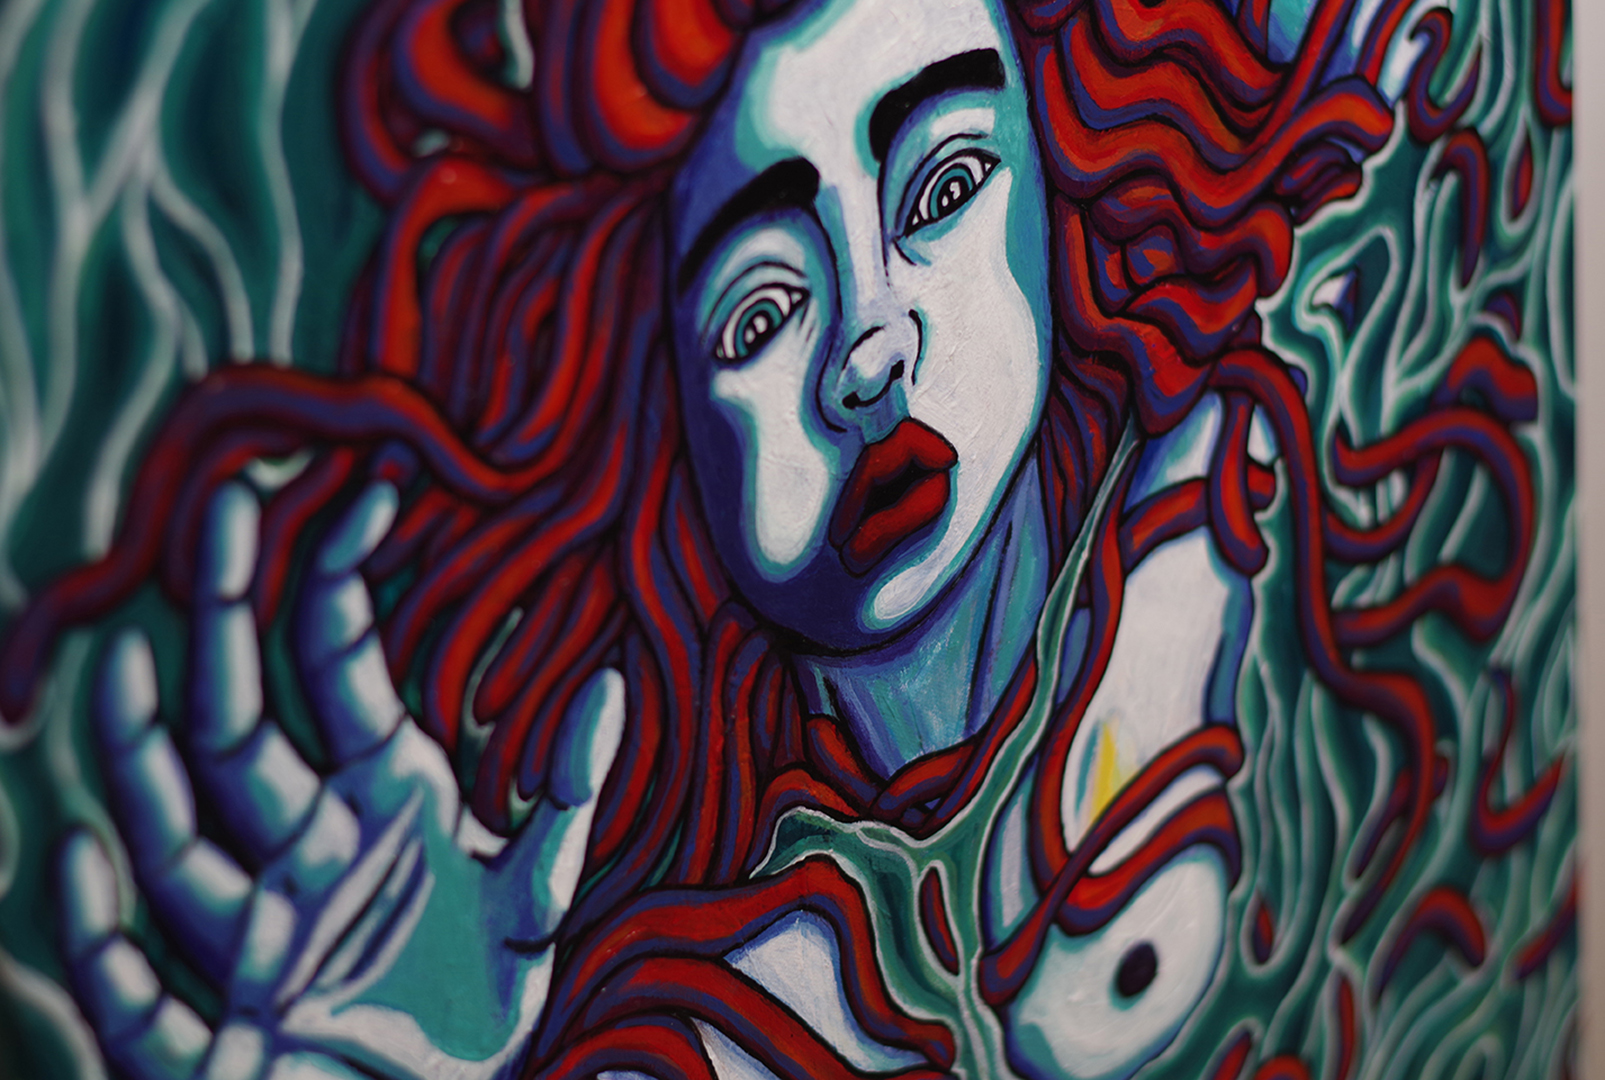 Femme dans l'eau, acrylique sur toile, 100 x 65 cm, février 2020, Lille, France